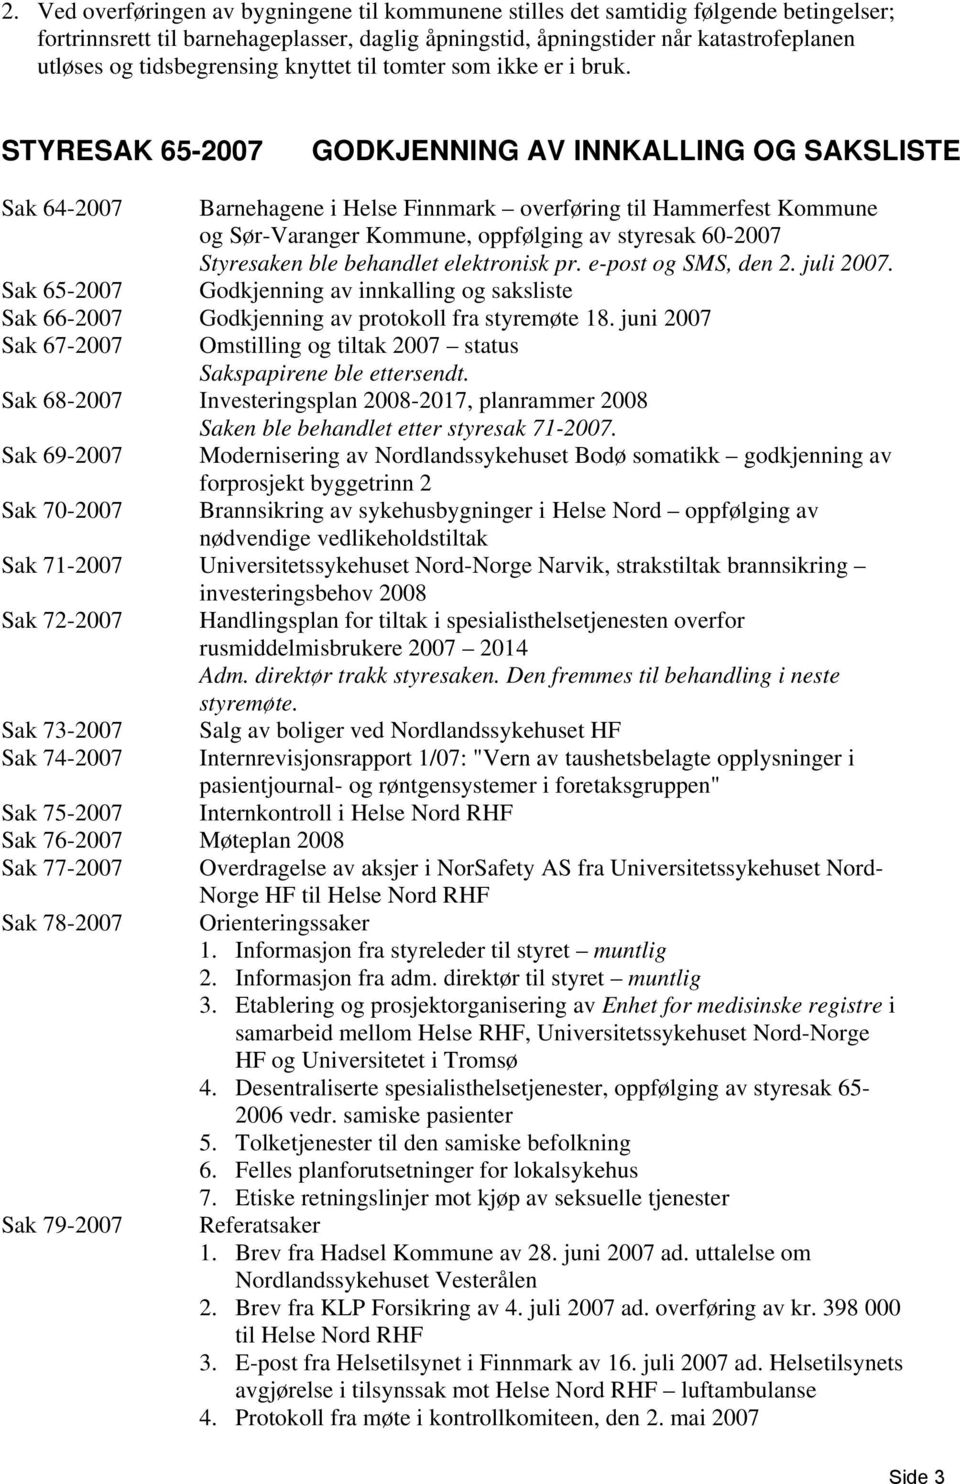 STYRESAK 65-2007 GODKJENNING AV INNKALLING OG SAKSLISTE Sak 64-2007 Barnehagene i Helse Finnmark overføring til Hammerfest Kommune og Sør-Varanger Kommune, oppfølging av styresak 60-2007 Styresaken